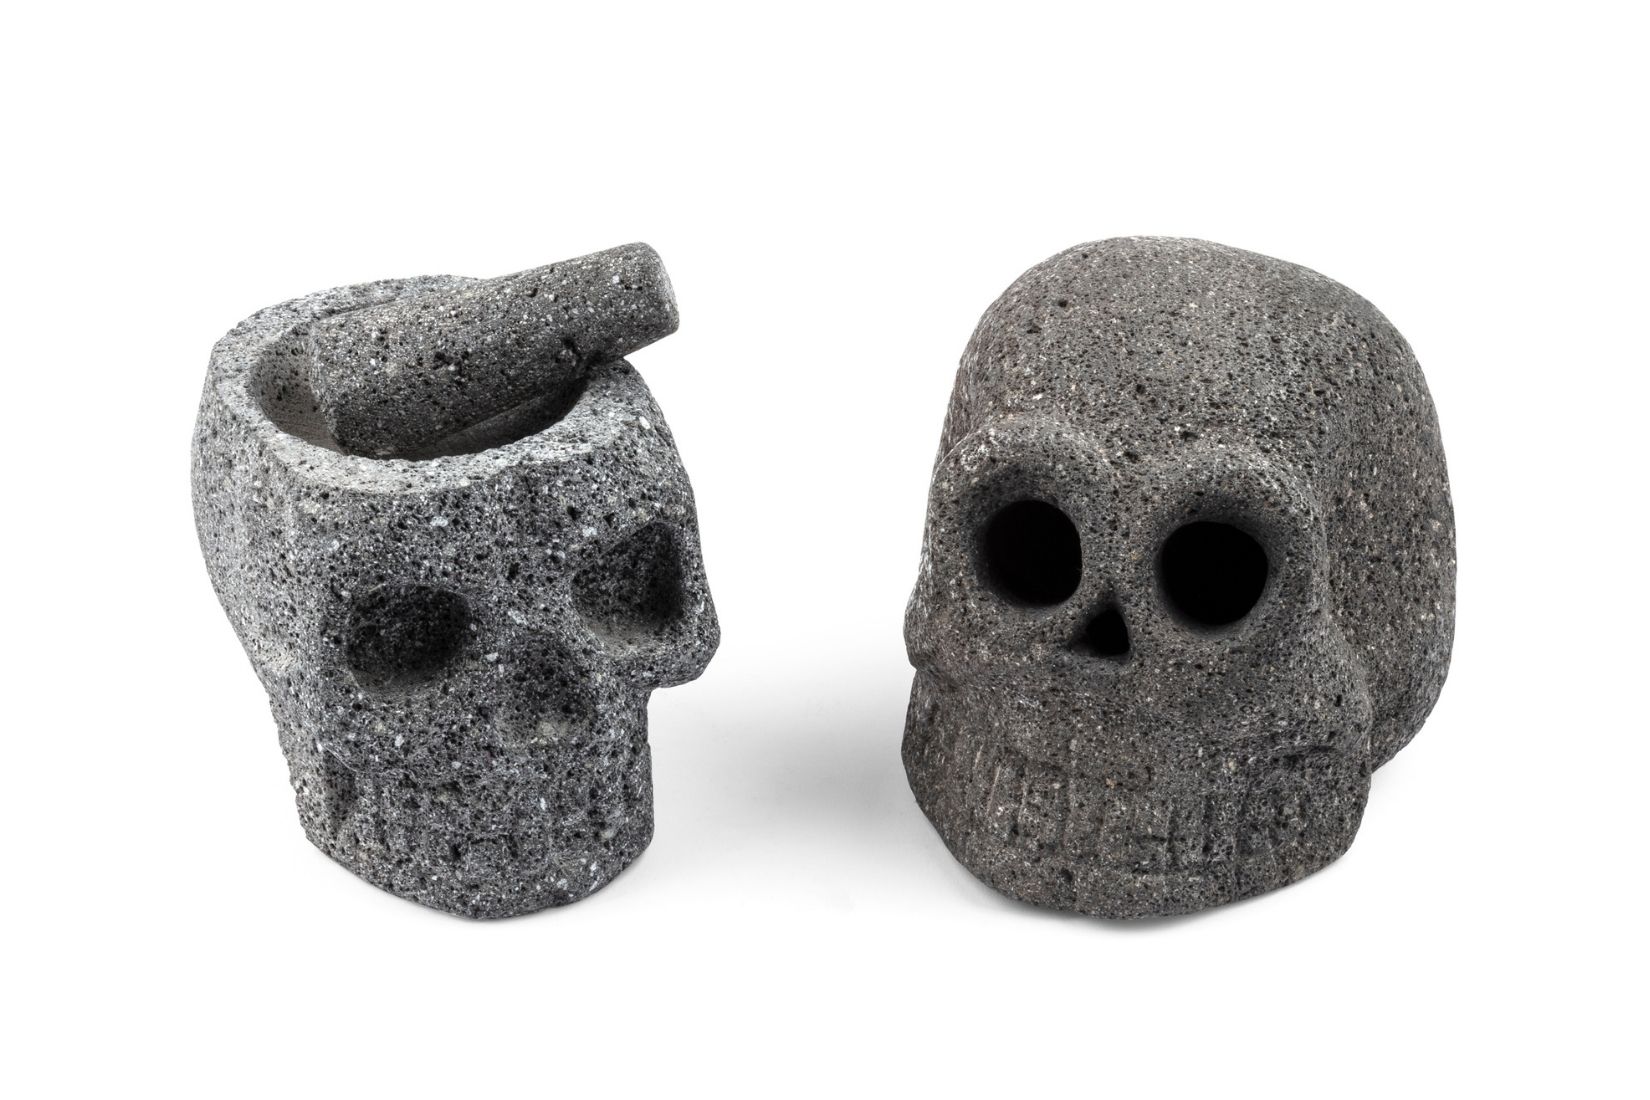 Cráneos de piedra volcánica. Artesano desconocido. Comonfort, Gto. Col. Miguel Abruch. (Foto: GLR Estudio).